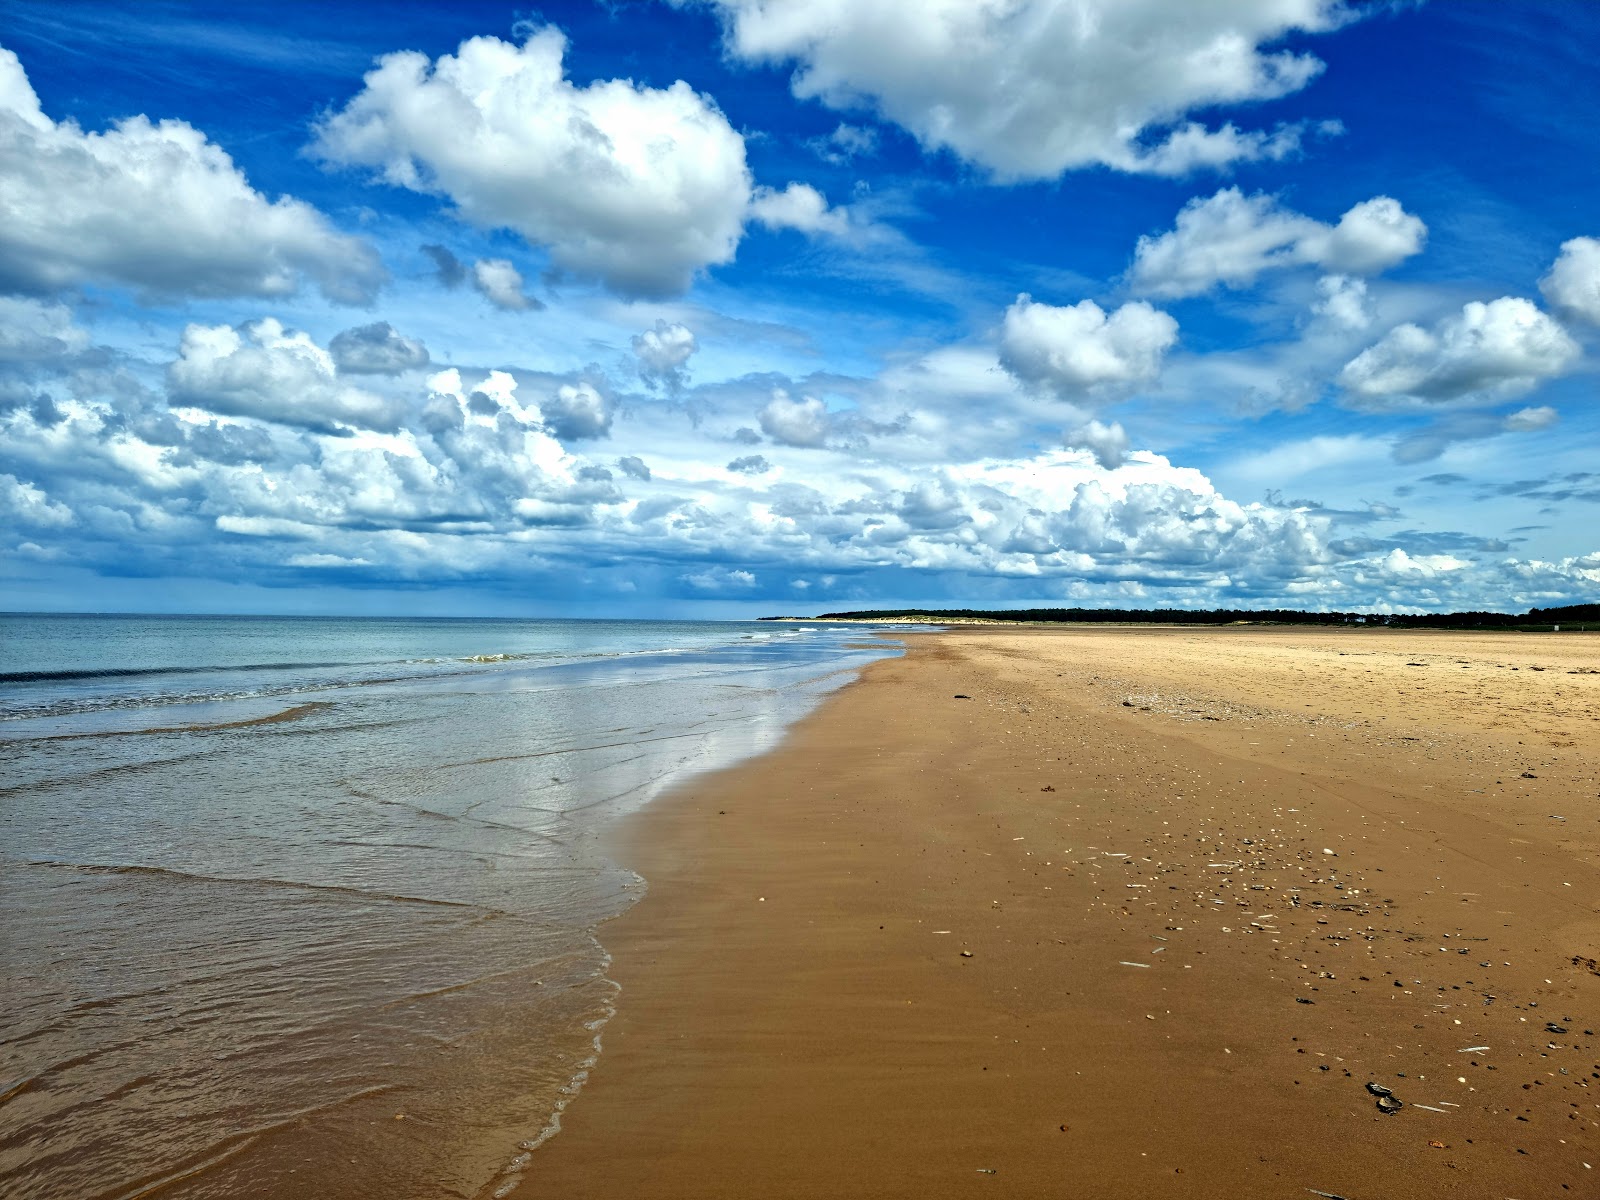 Zdjęcie Holkham beach położony w naturalnym obszarze